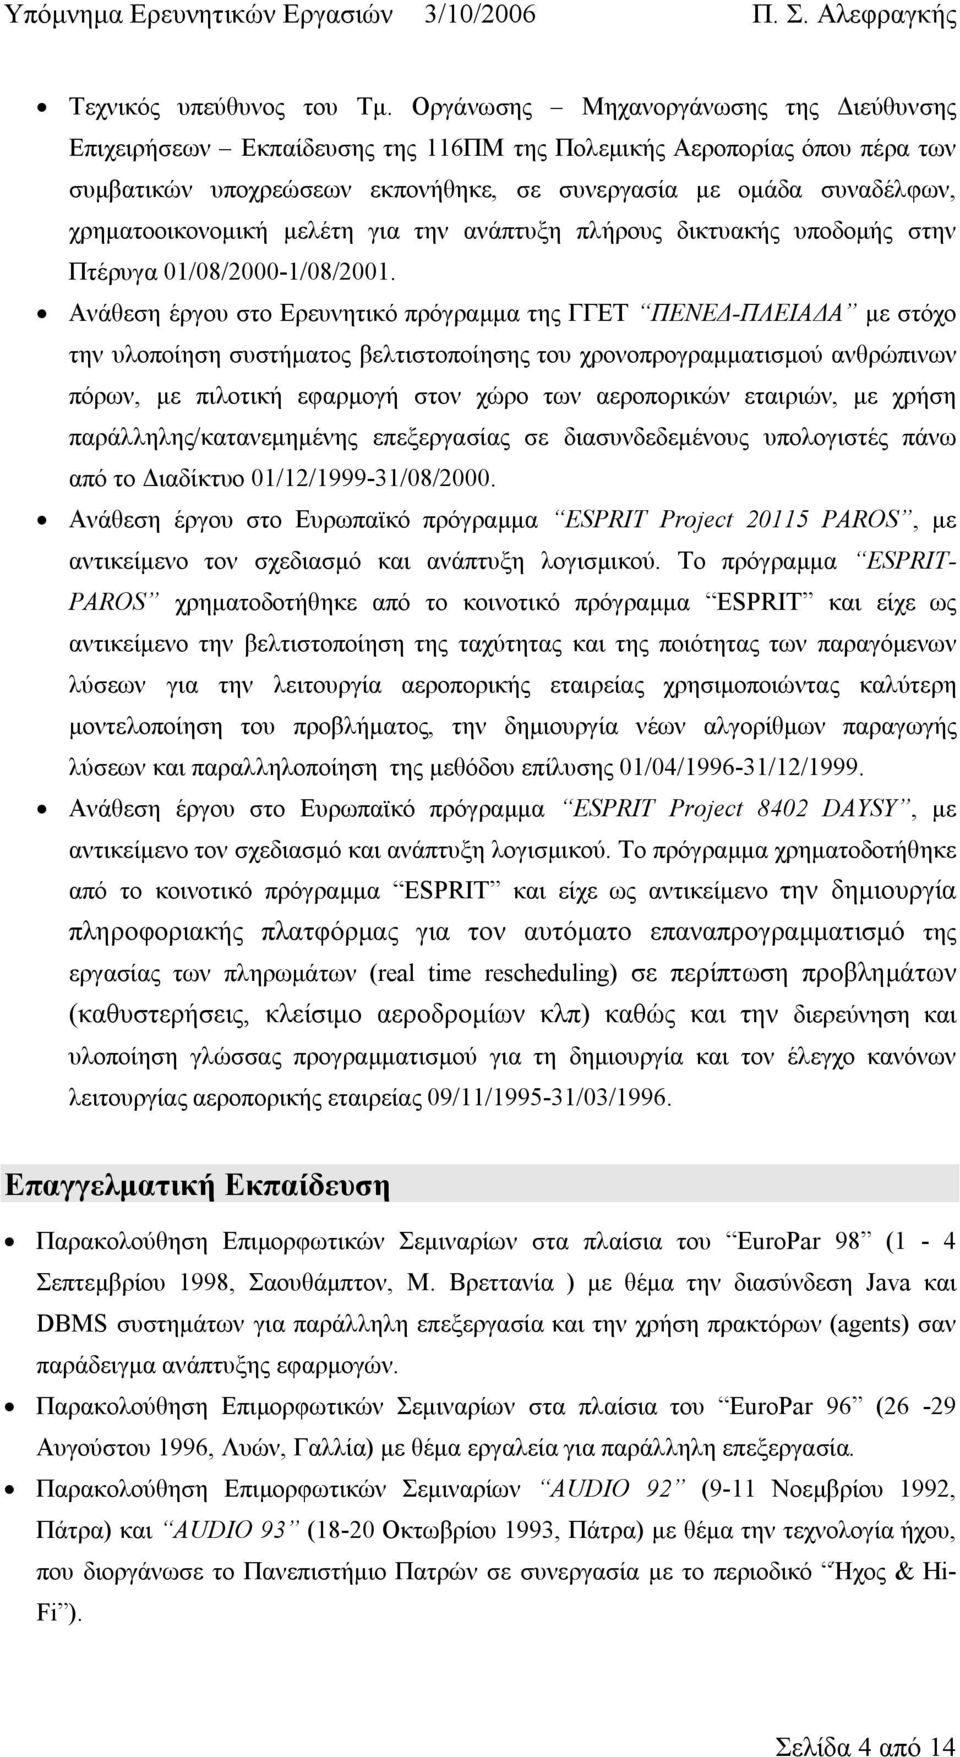 χρηματοοικονομική μελέτη για την ανάπτυξη πλήρους δικτυακής υποδομής στην Πτέρυγα 01/08/2000-1/08/2001.